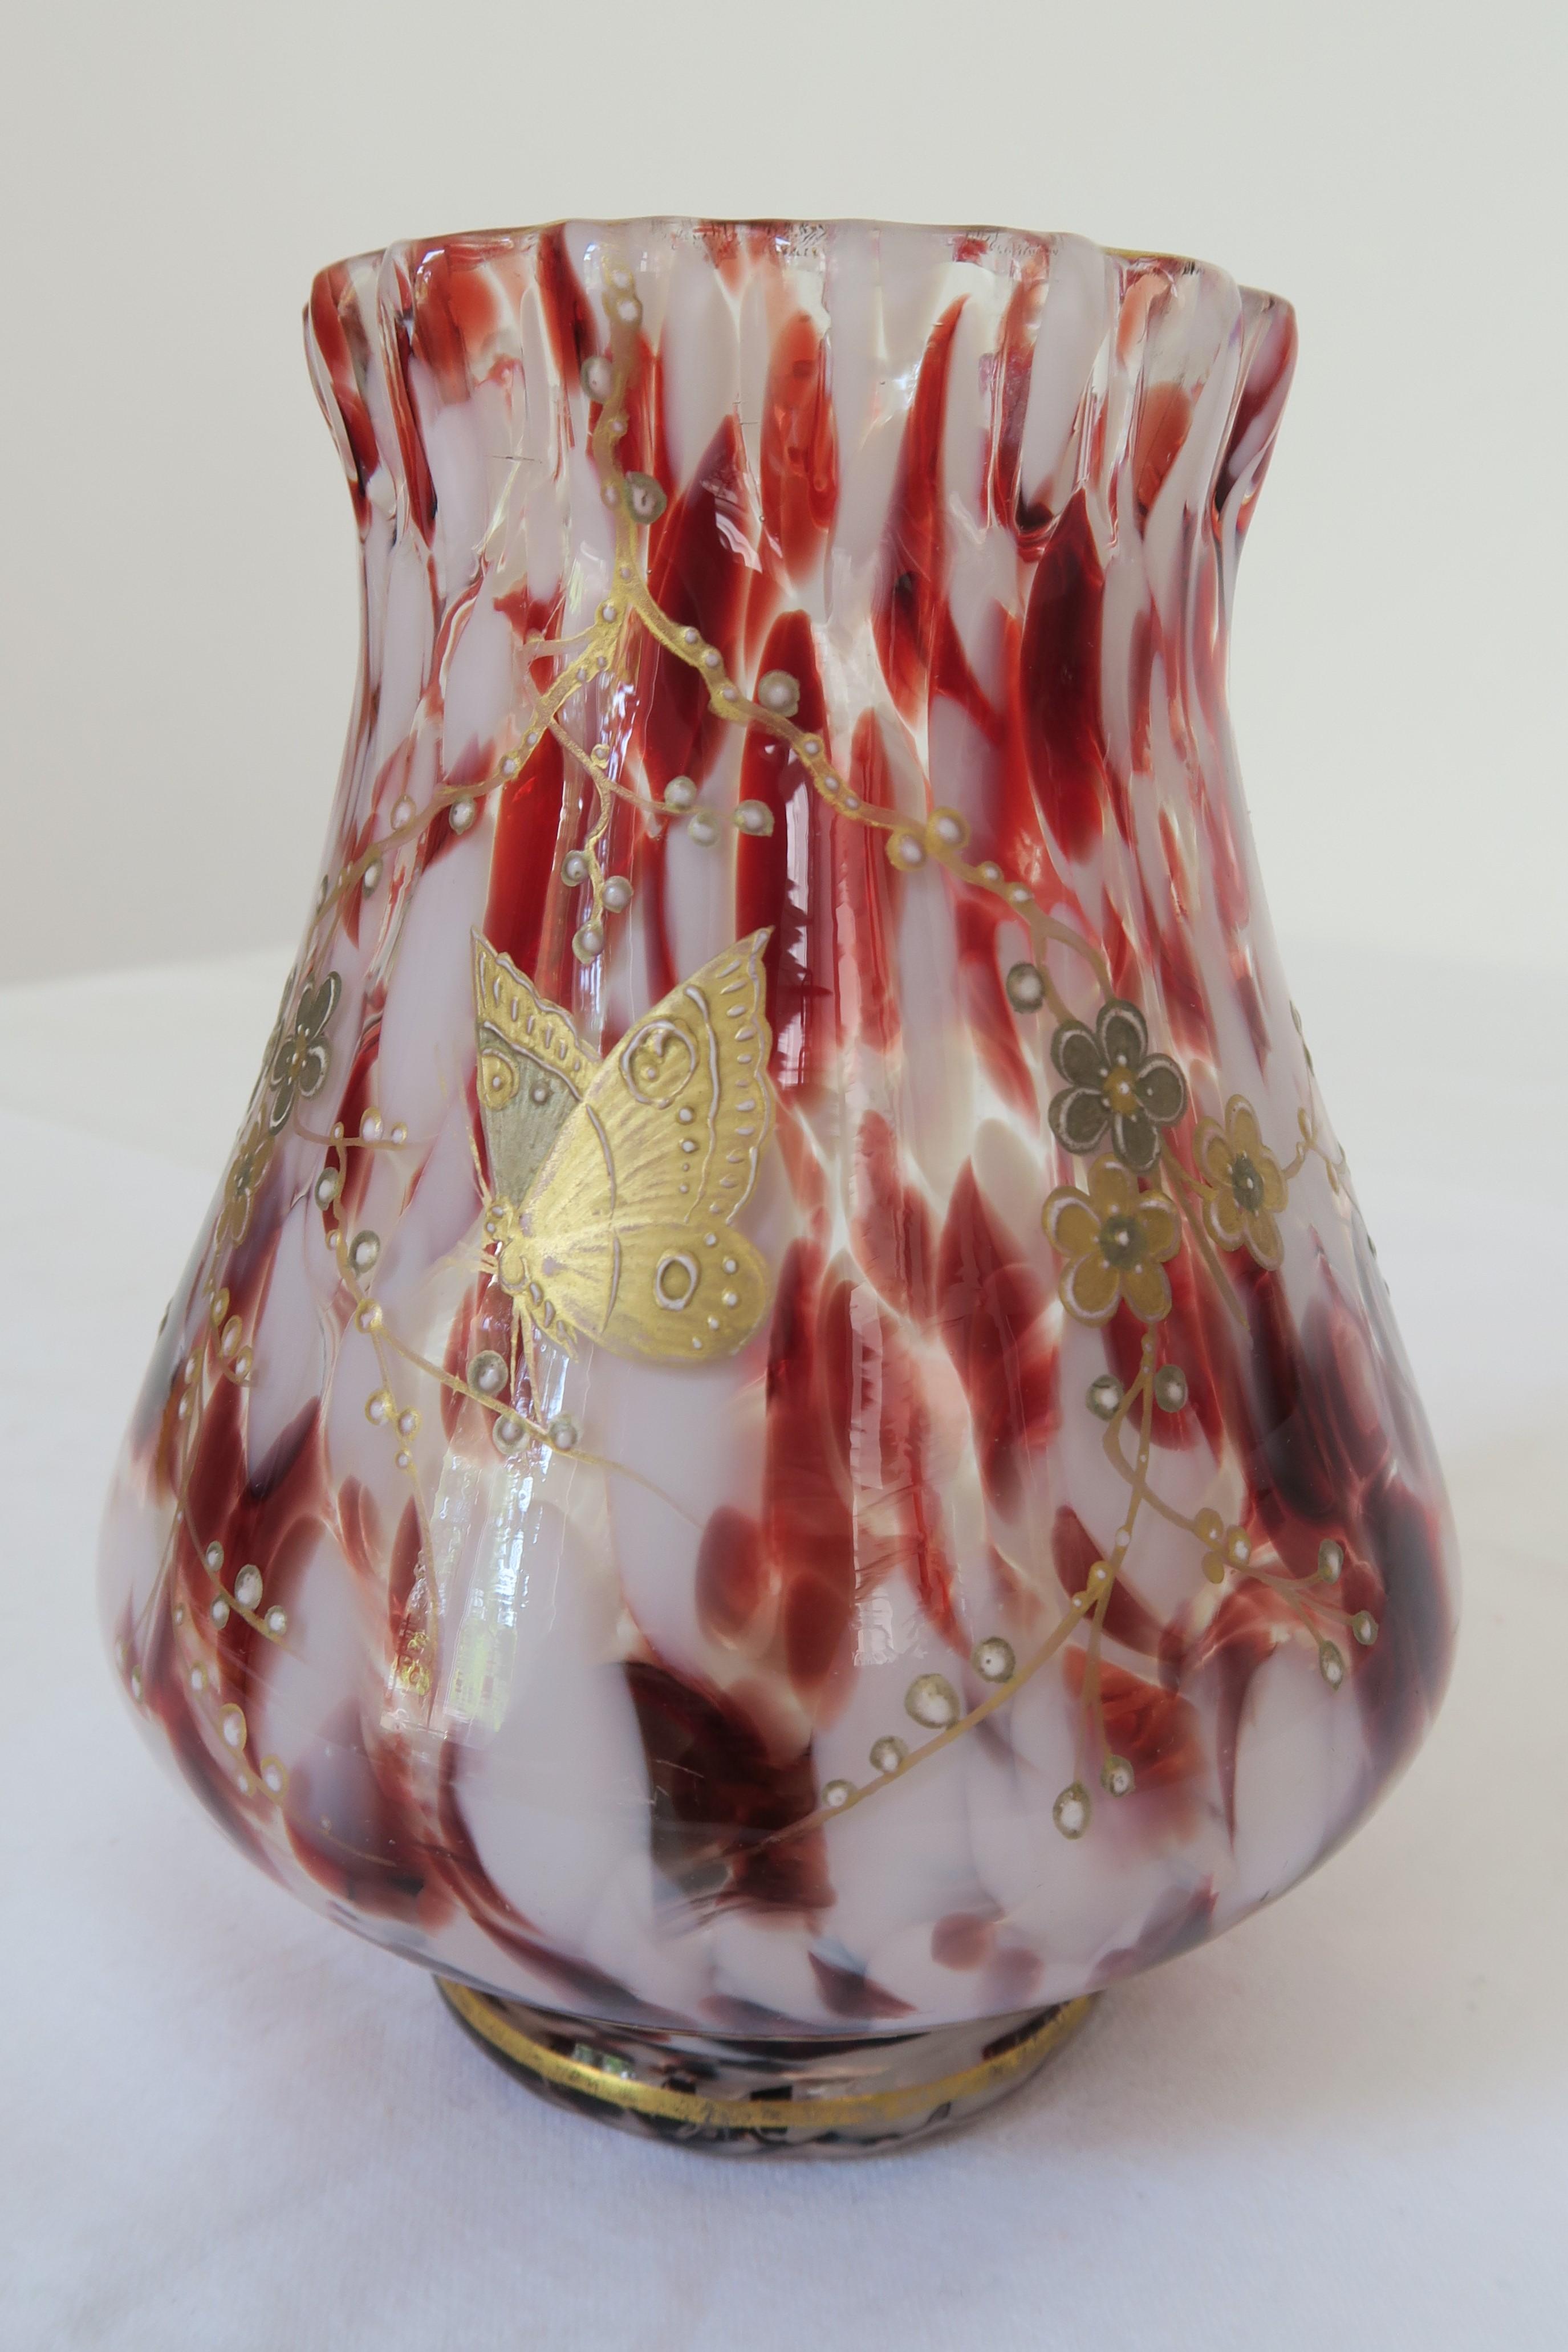 Zum Verkauf steht eine hübsche kleine Glasvase mit roten und weißen Sprenkeln und gold- und silberfarbenen Applikationen. Das Design geht auf den französischen Glas- und Keramikkünstler Émile Gallé zurück. Die Vase ist mit liebenswerten